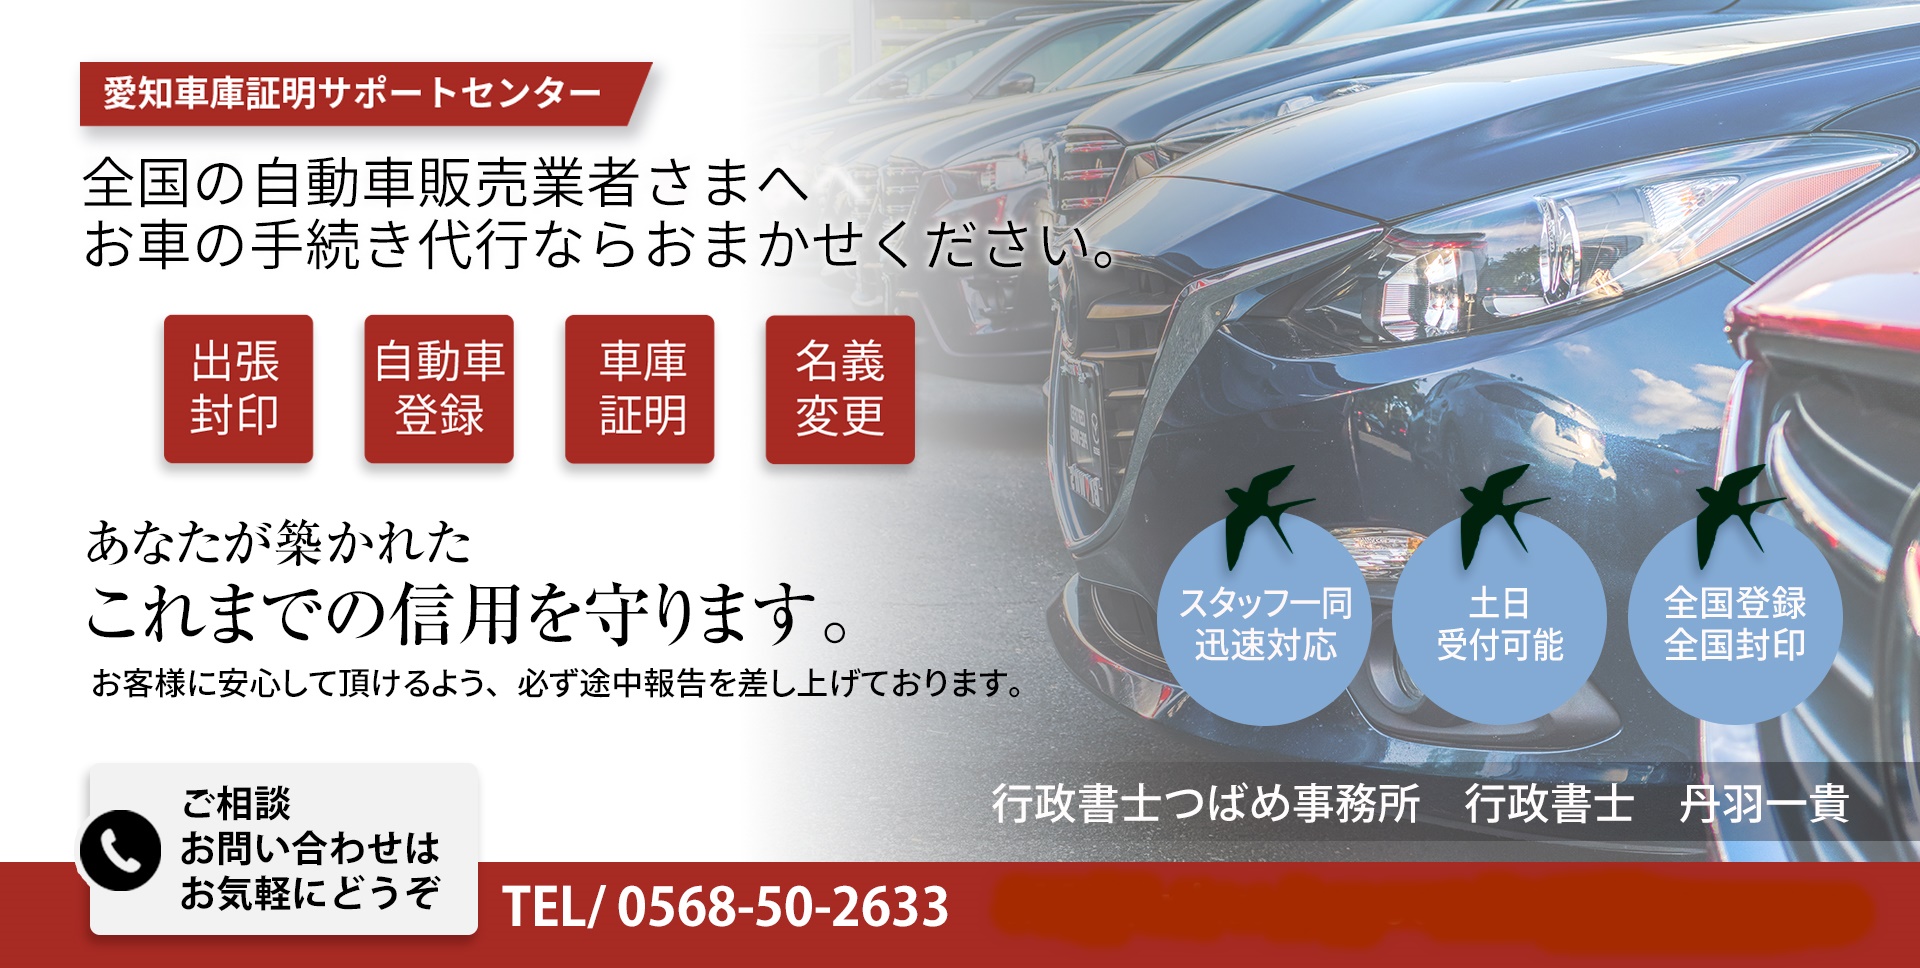 名古屋市天白区の車庫証明 | 行政書士つばめ事務所が天白警察署の車庫証明を代行します